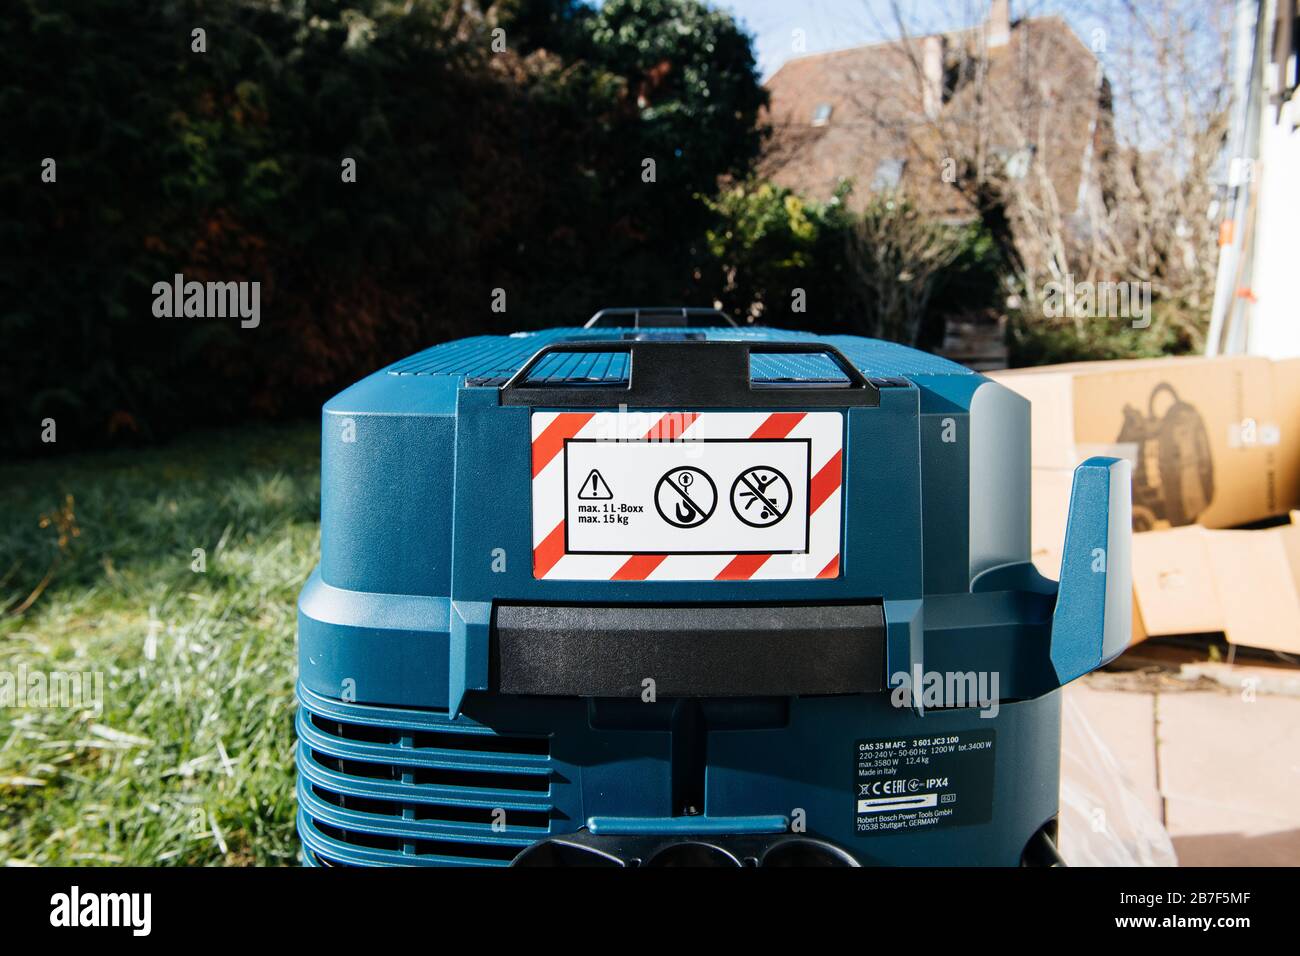 Estrasburgo, Francia - 9 de febrero de 2020: Advertencia con 1 l-boxx y carga máxima de 15 kg sobre la nueva aspiradora profesional de limpieza en seco y húmedo BOSCH GAS 35 M AFC, 35 L con limpieza automática de filtro de polvo clase M. Foto de stock